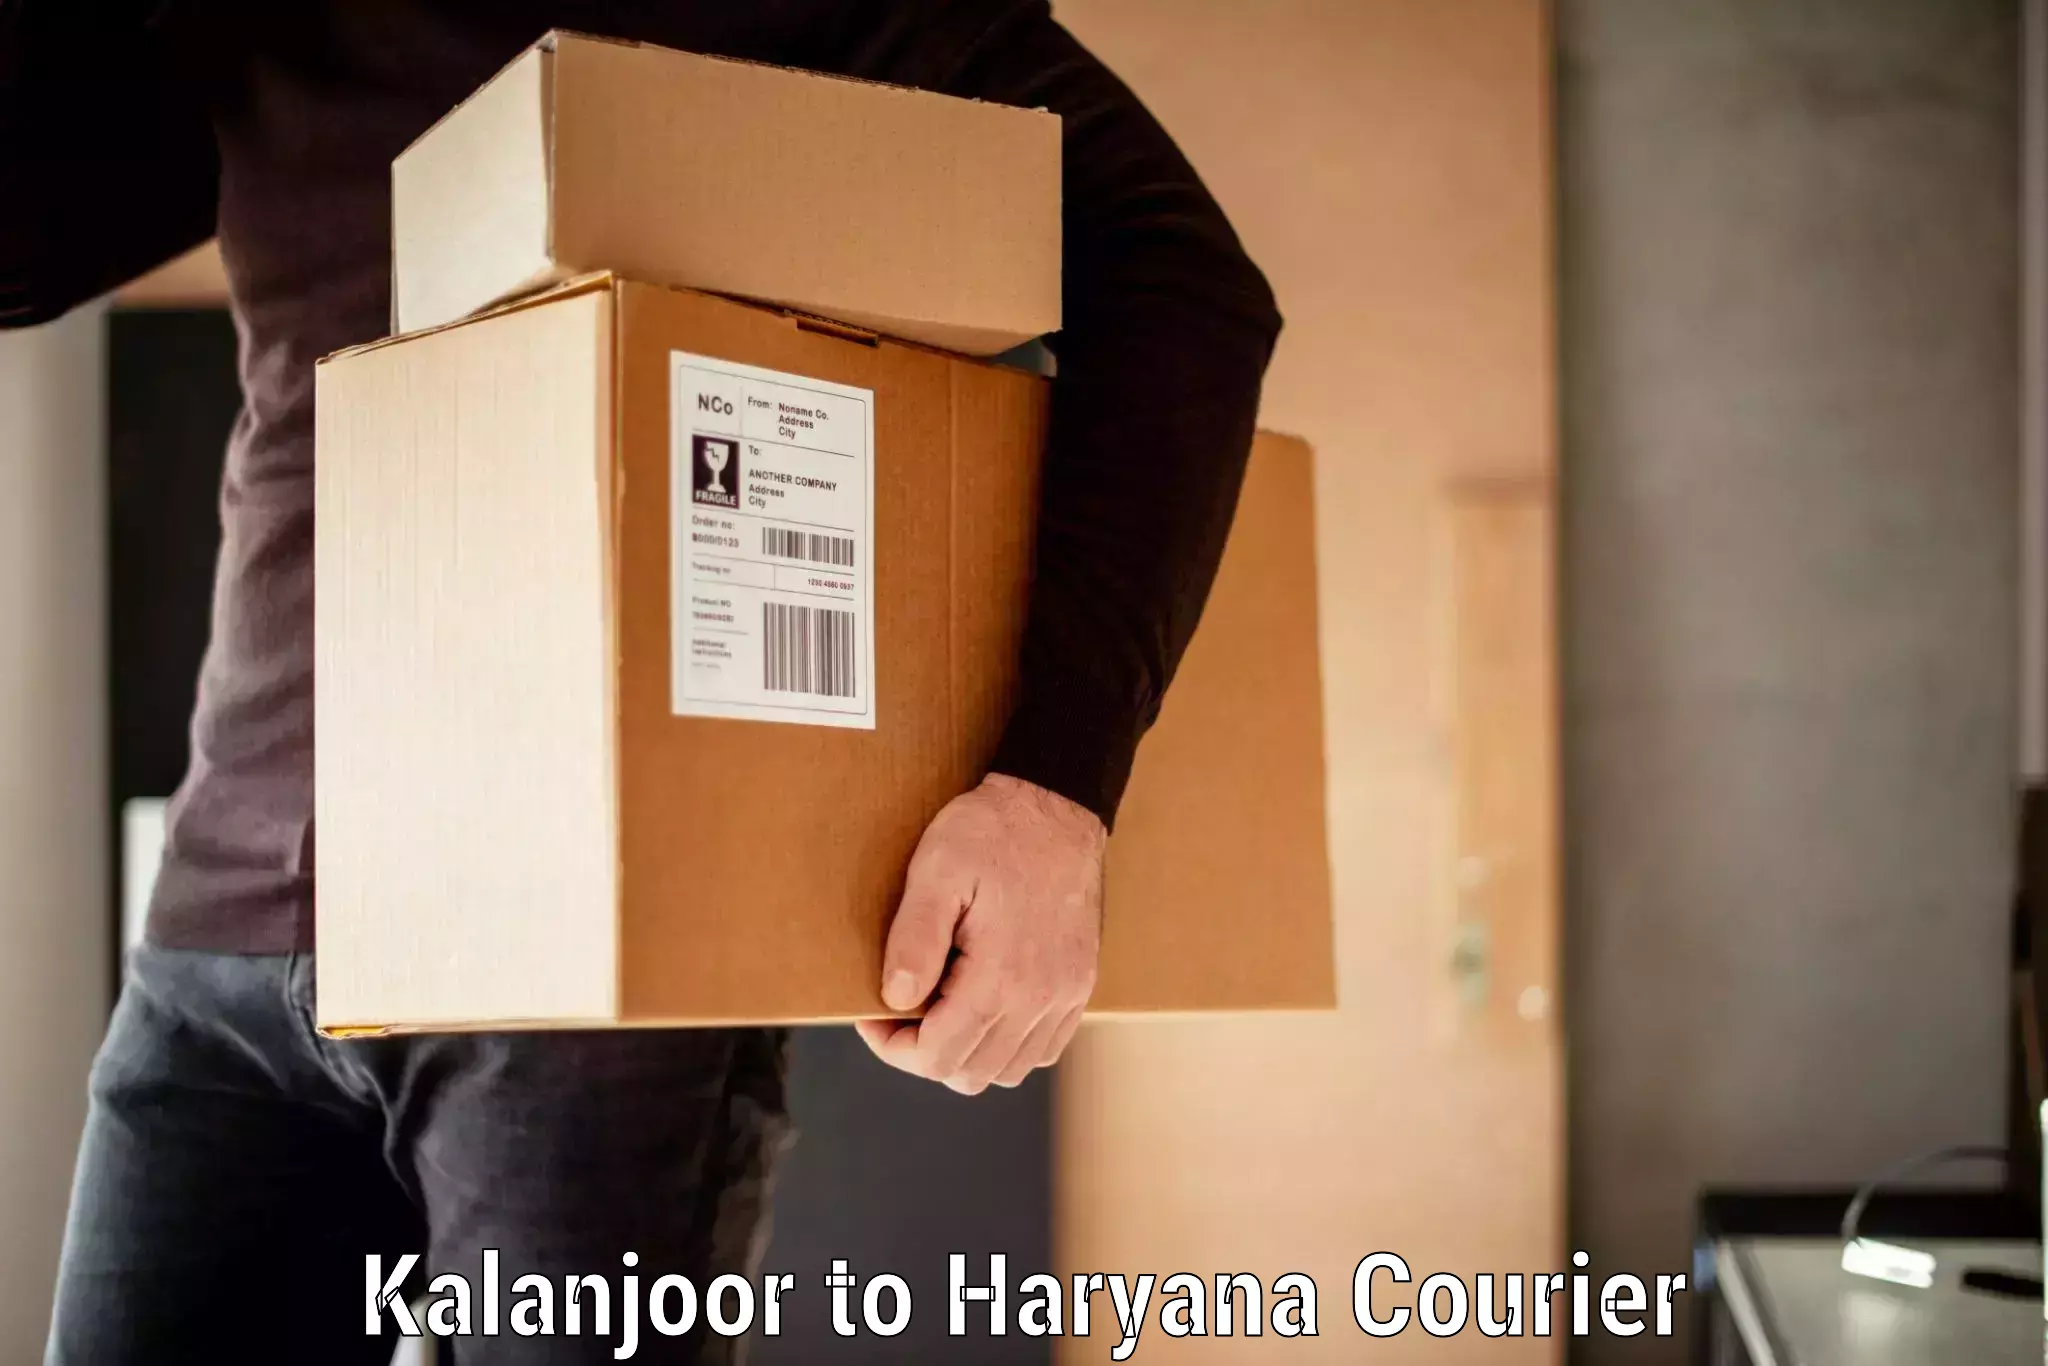 Baggage delivery estimate in Kalanjoor to Bilaspur Haryana